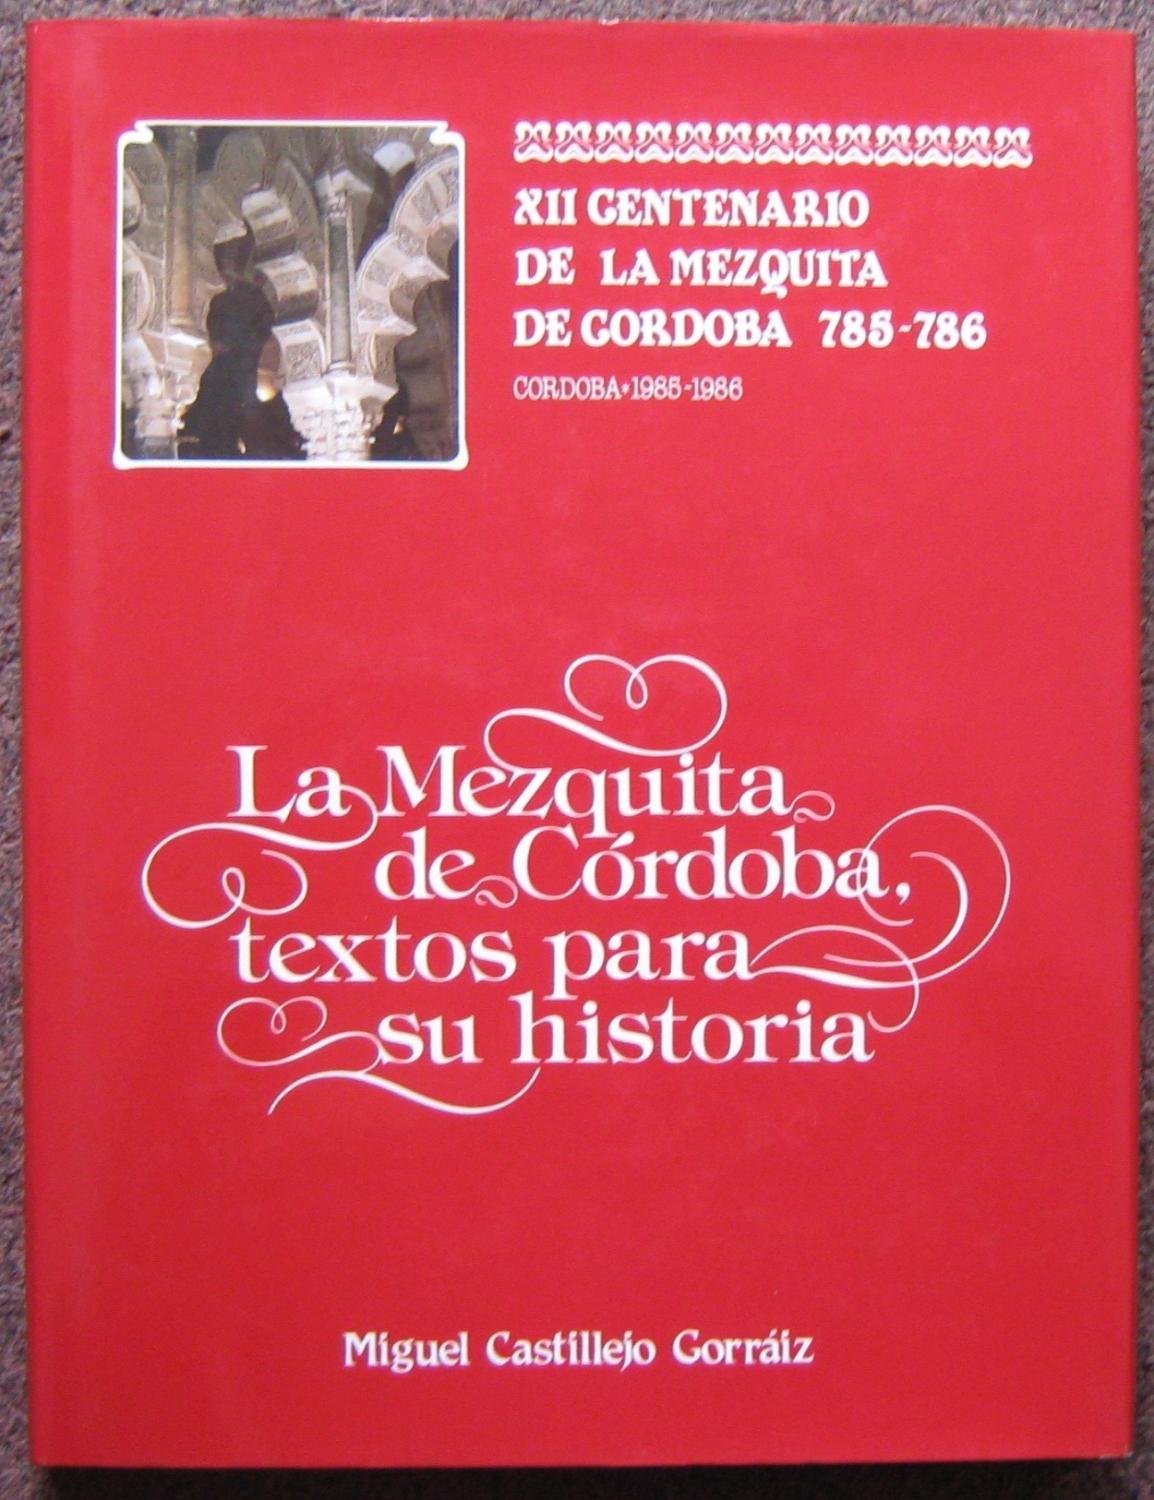 La Mezquita de Córdoba, textos para su historia "XII Centenario de la Mezquita de Córdoba 785-786"